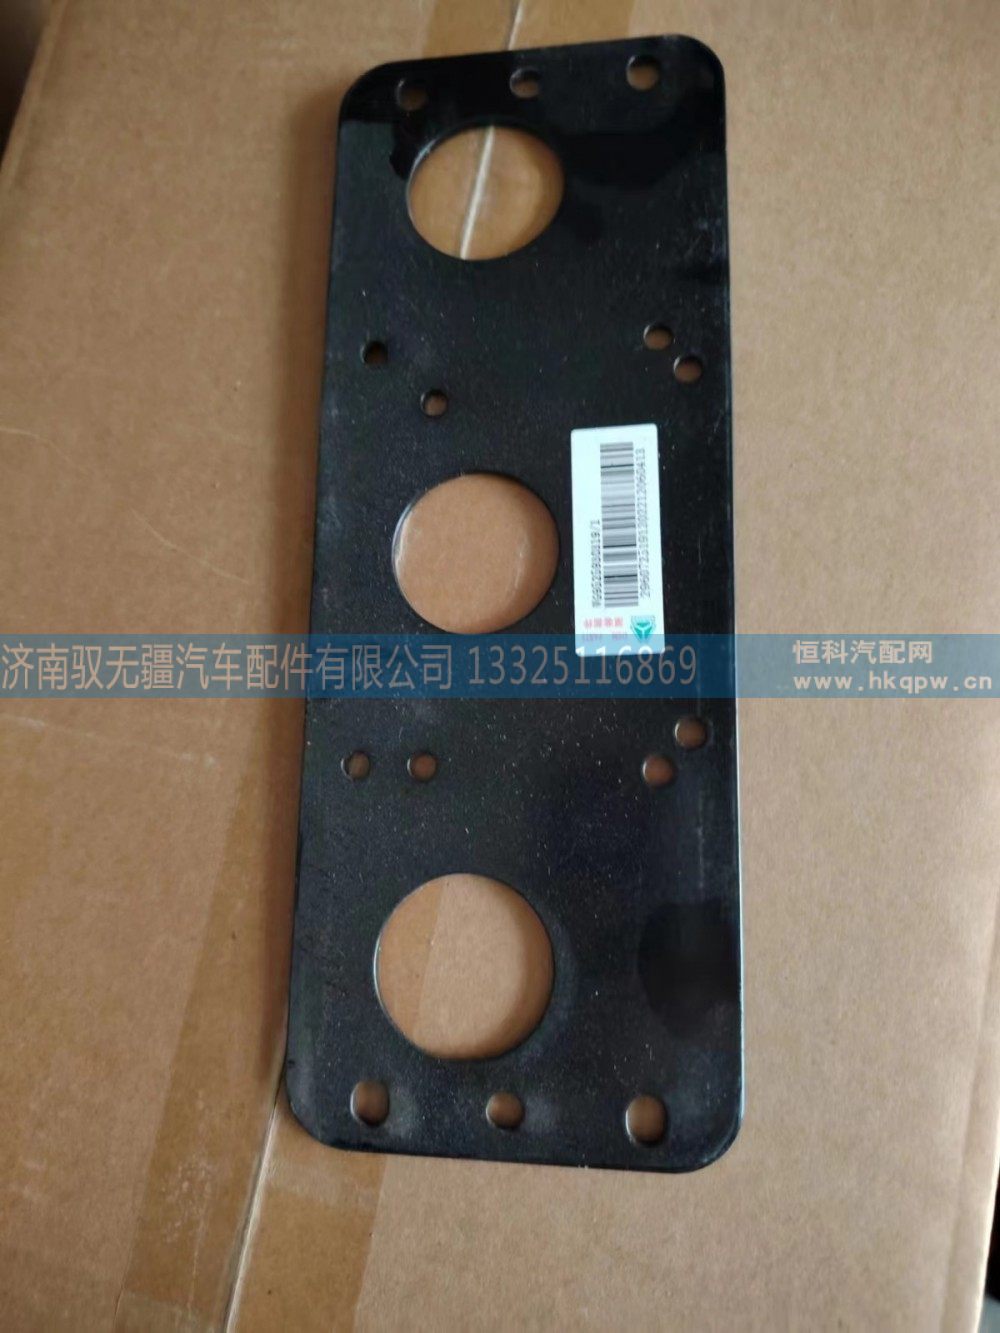 WG9525930319,雷达固定板,济南驭无疆汽车配件有限公司